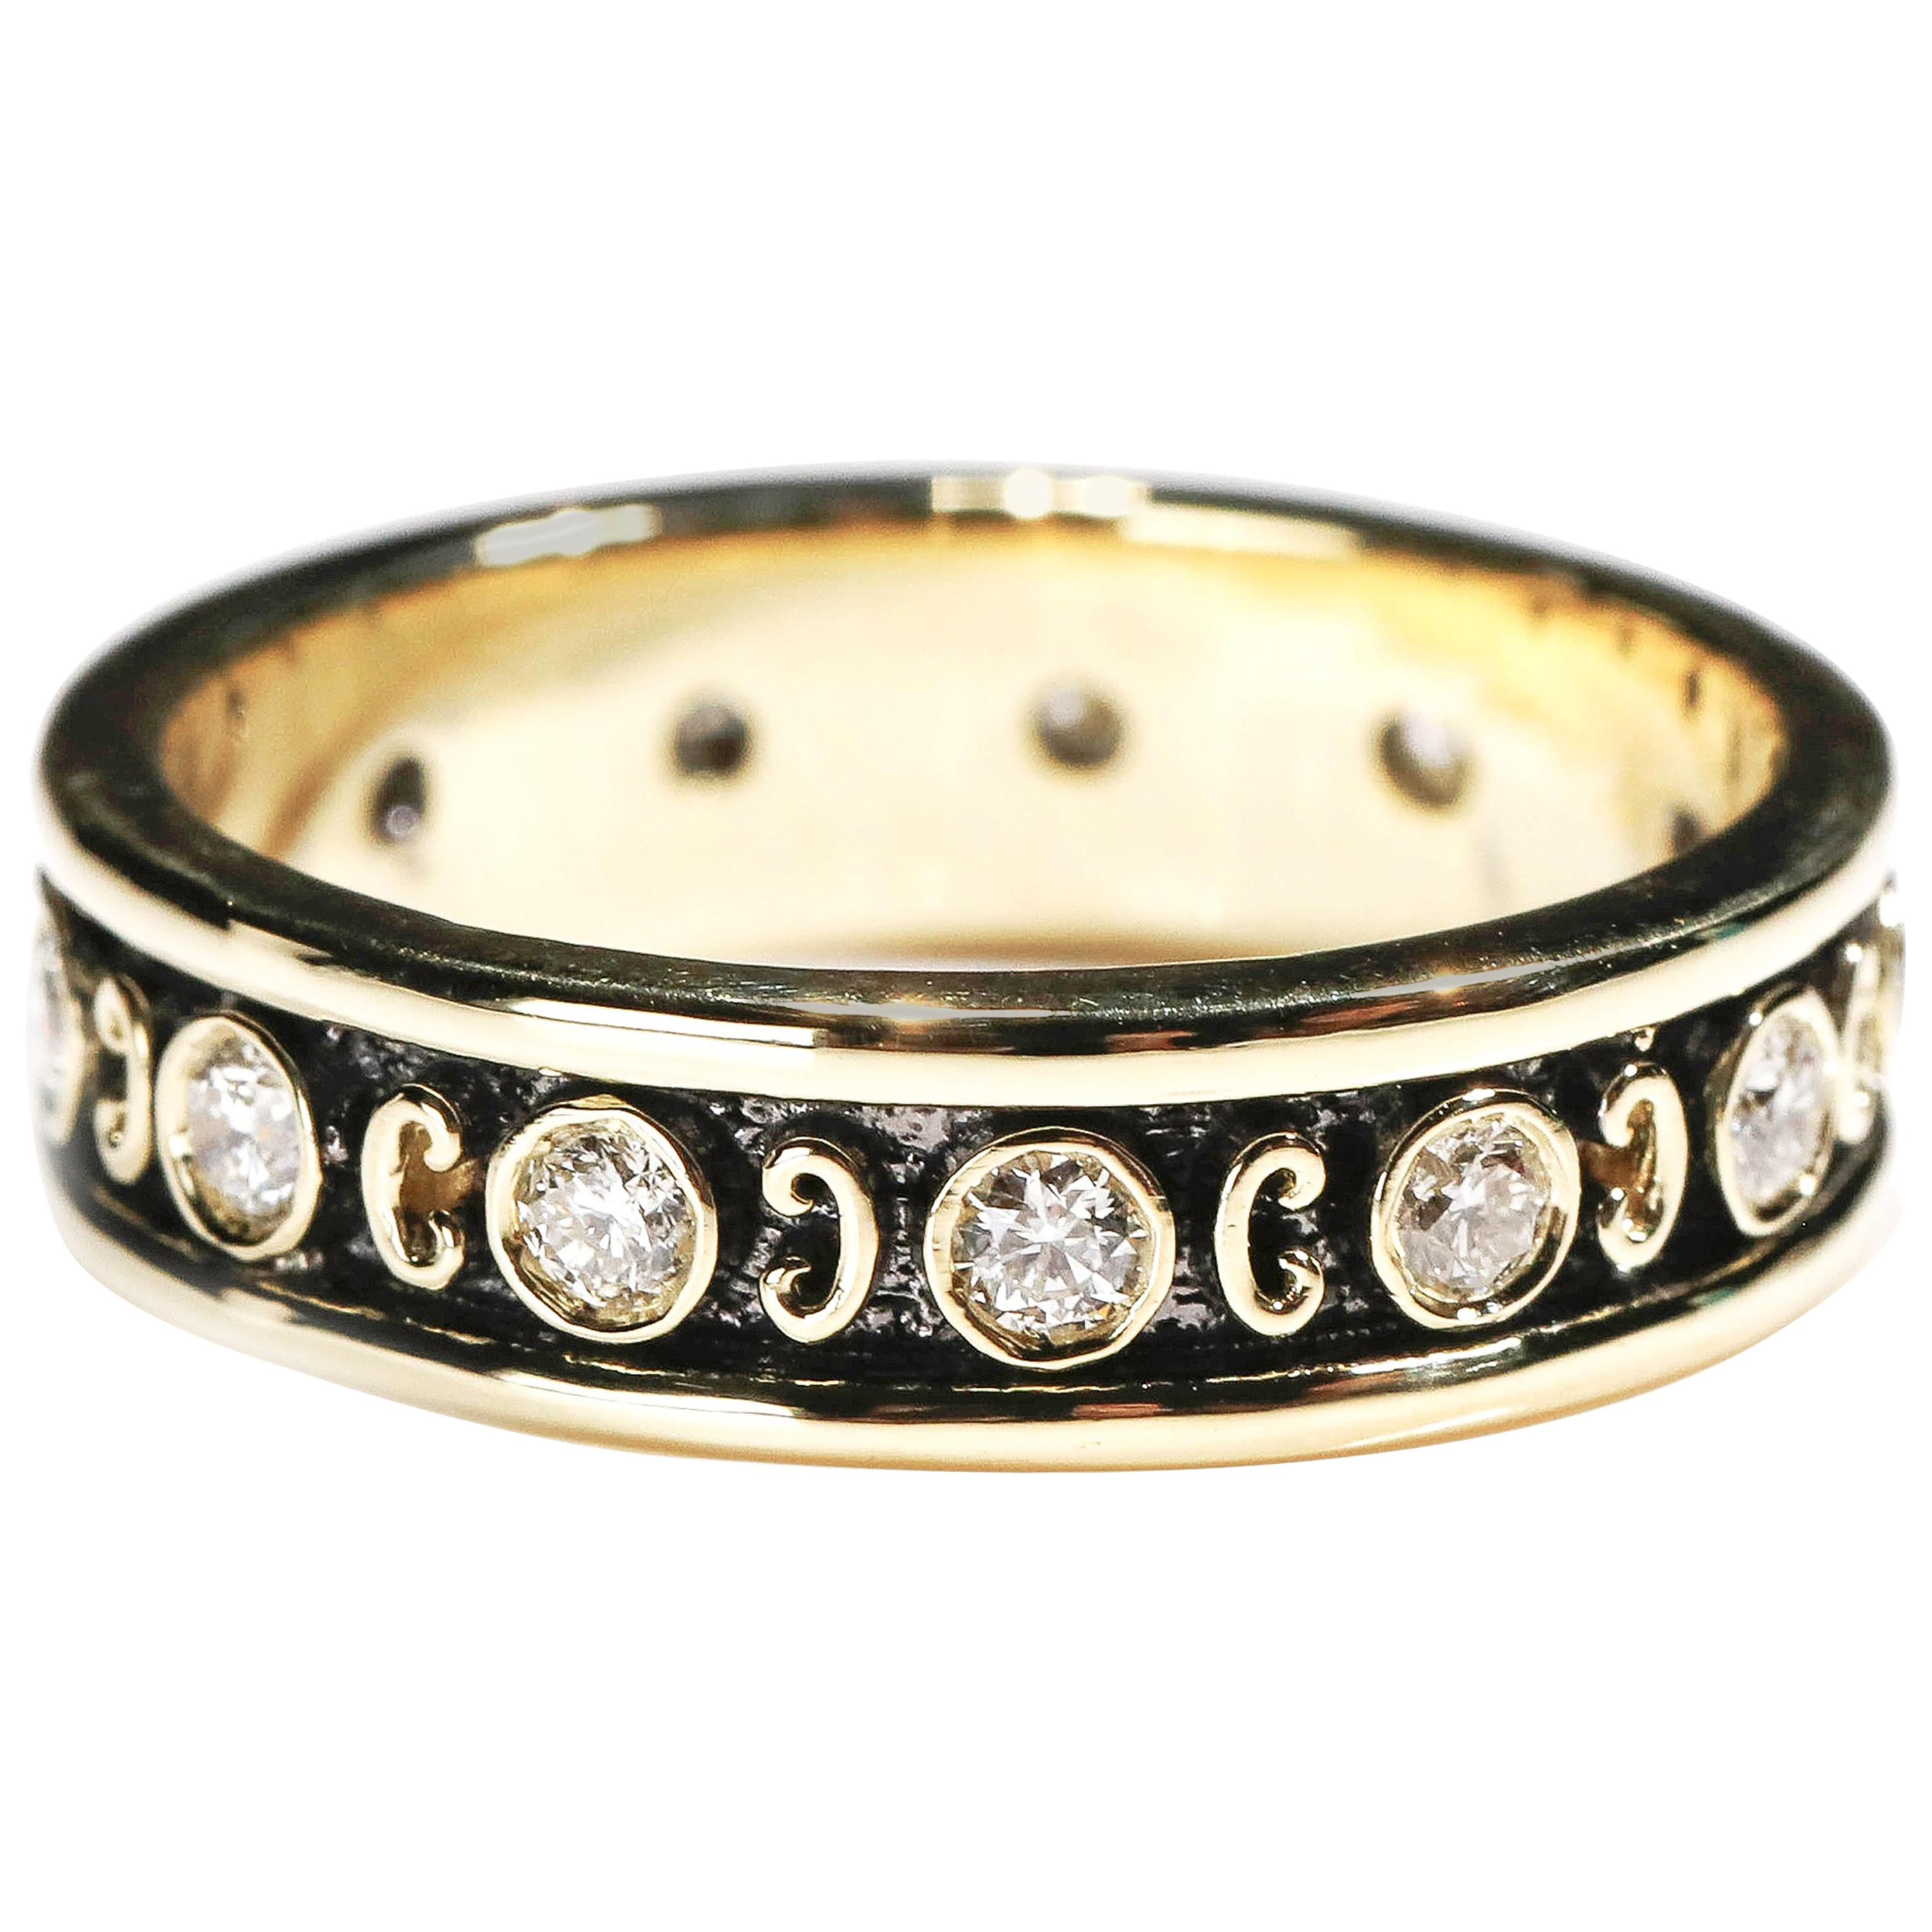 18 Karat Yellow Gold 0.35 Carat Round Diamond Band Ring US Size 6